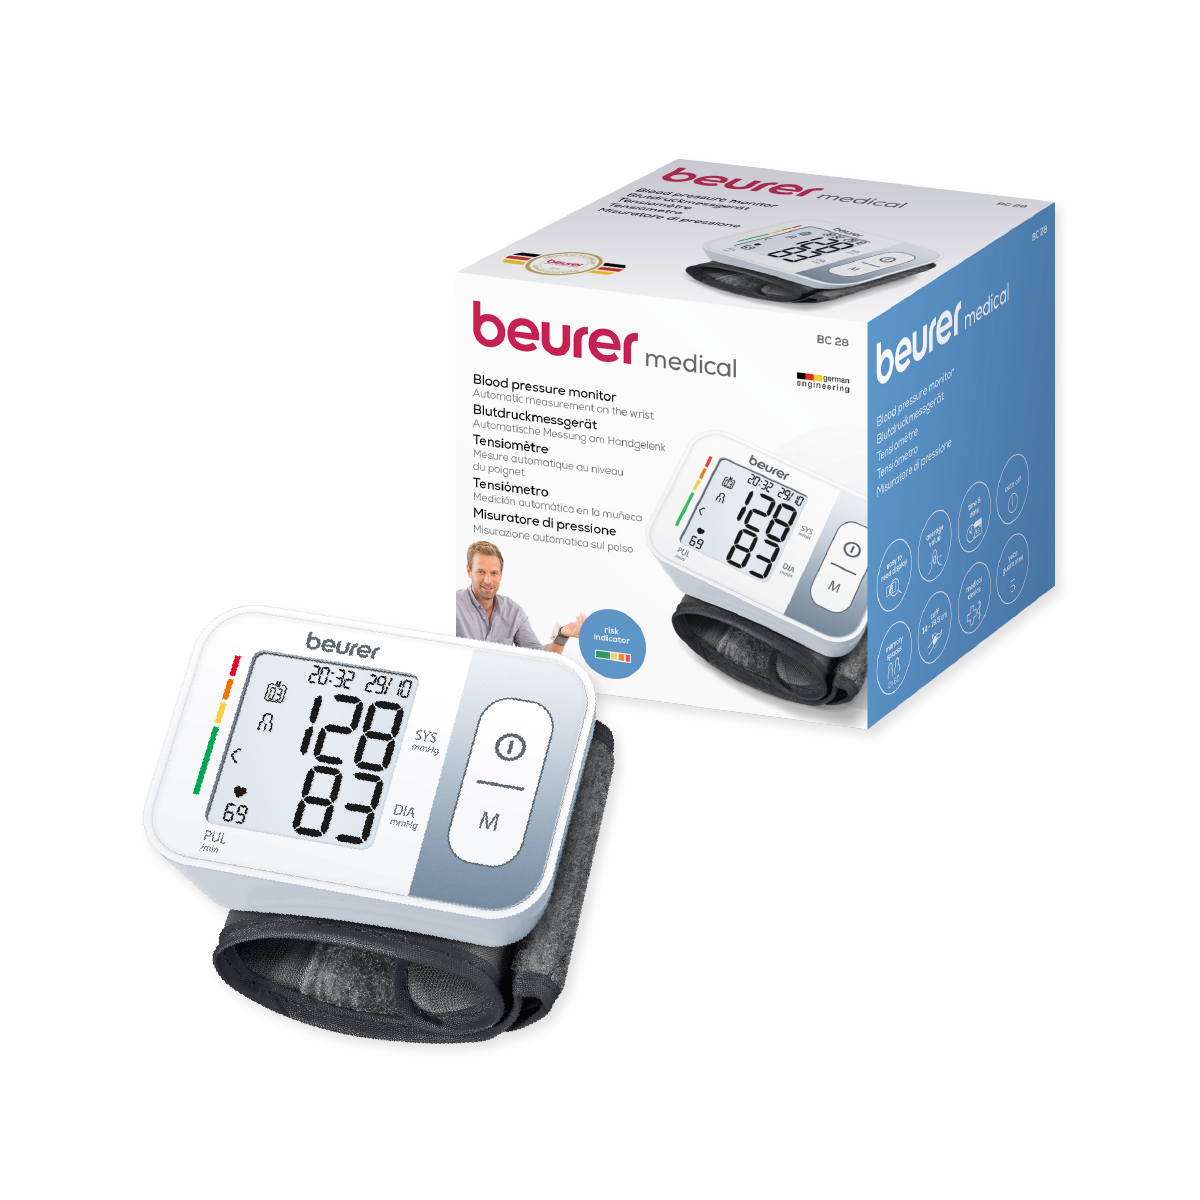 Monitor de presión arterial baumanómetro digital de muñeca con detector de arritmias BC28 Marca beurer®